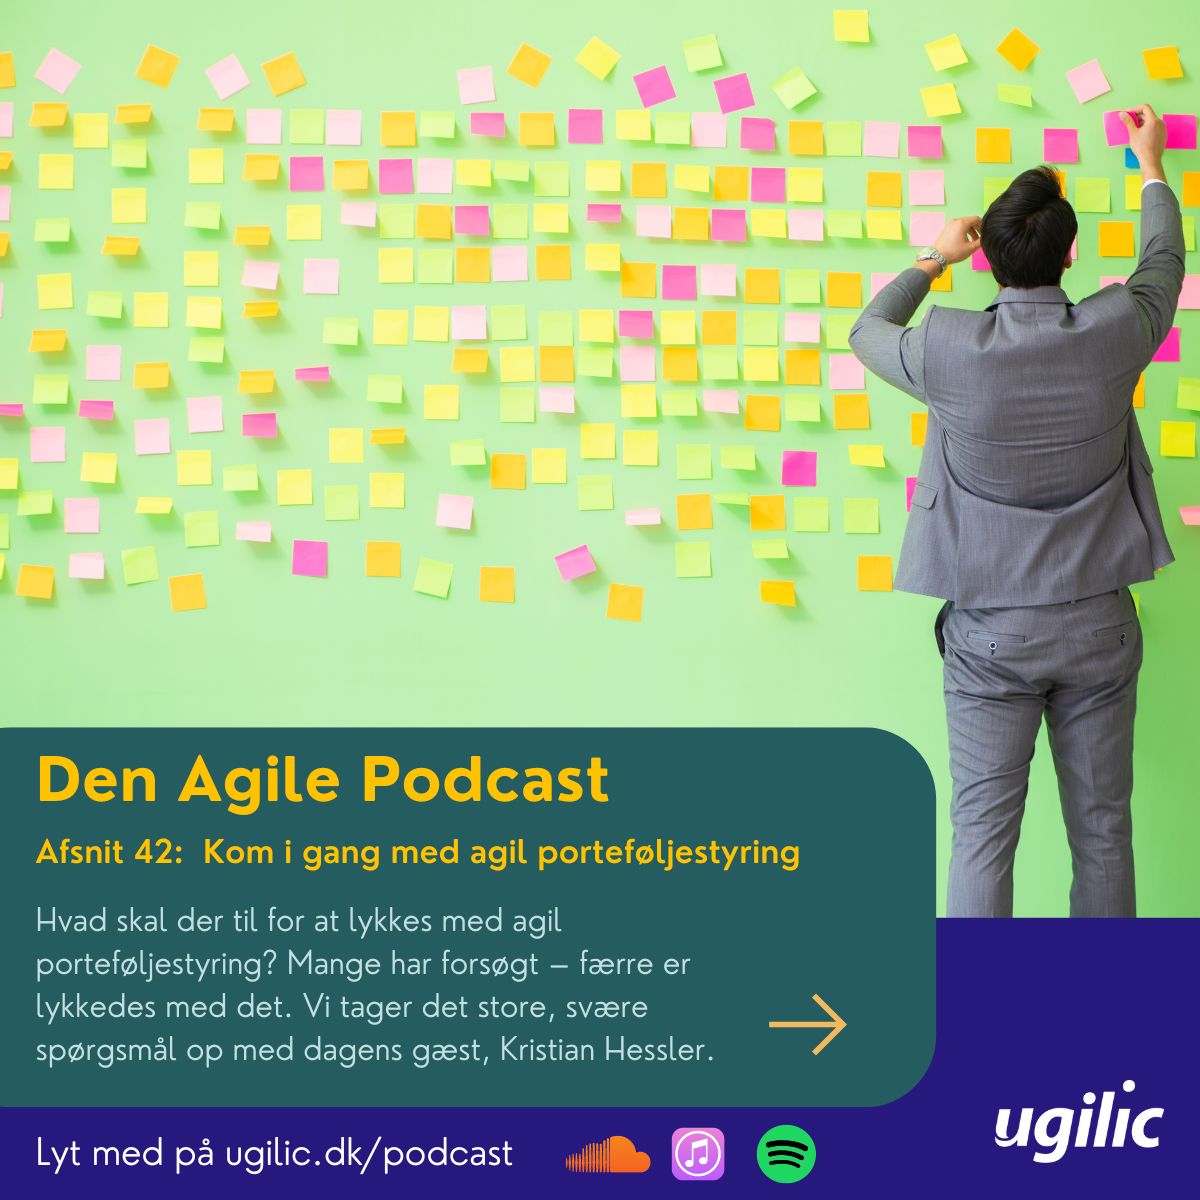 Lyt til Den Agile Podcast. Afsnit 42 om porteføljestyring.